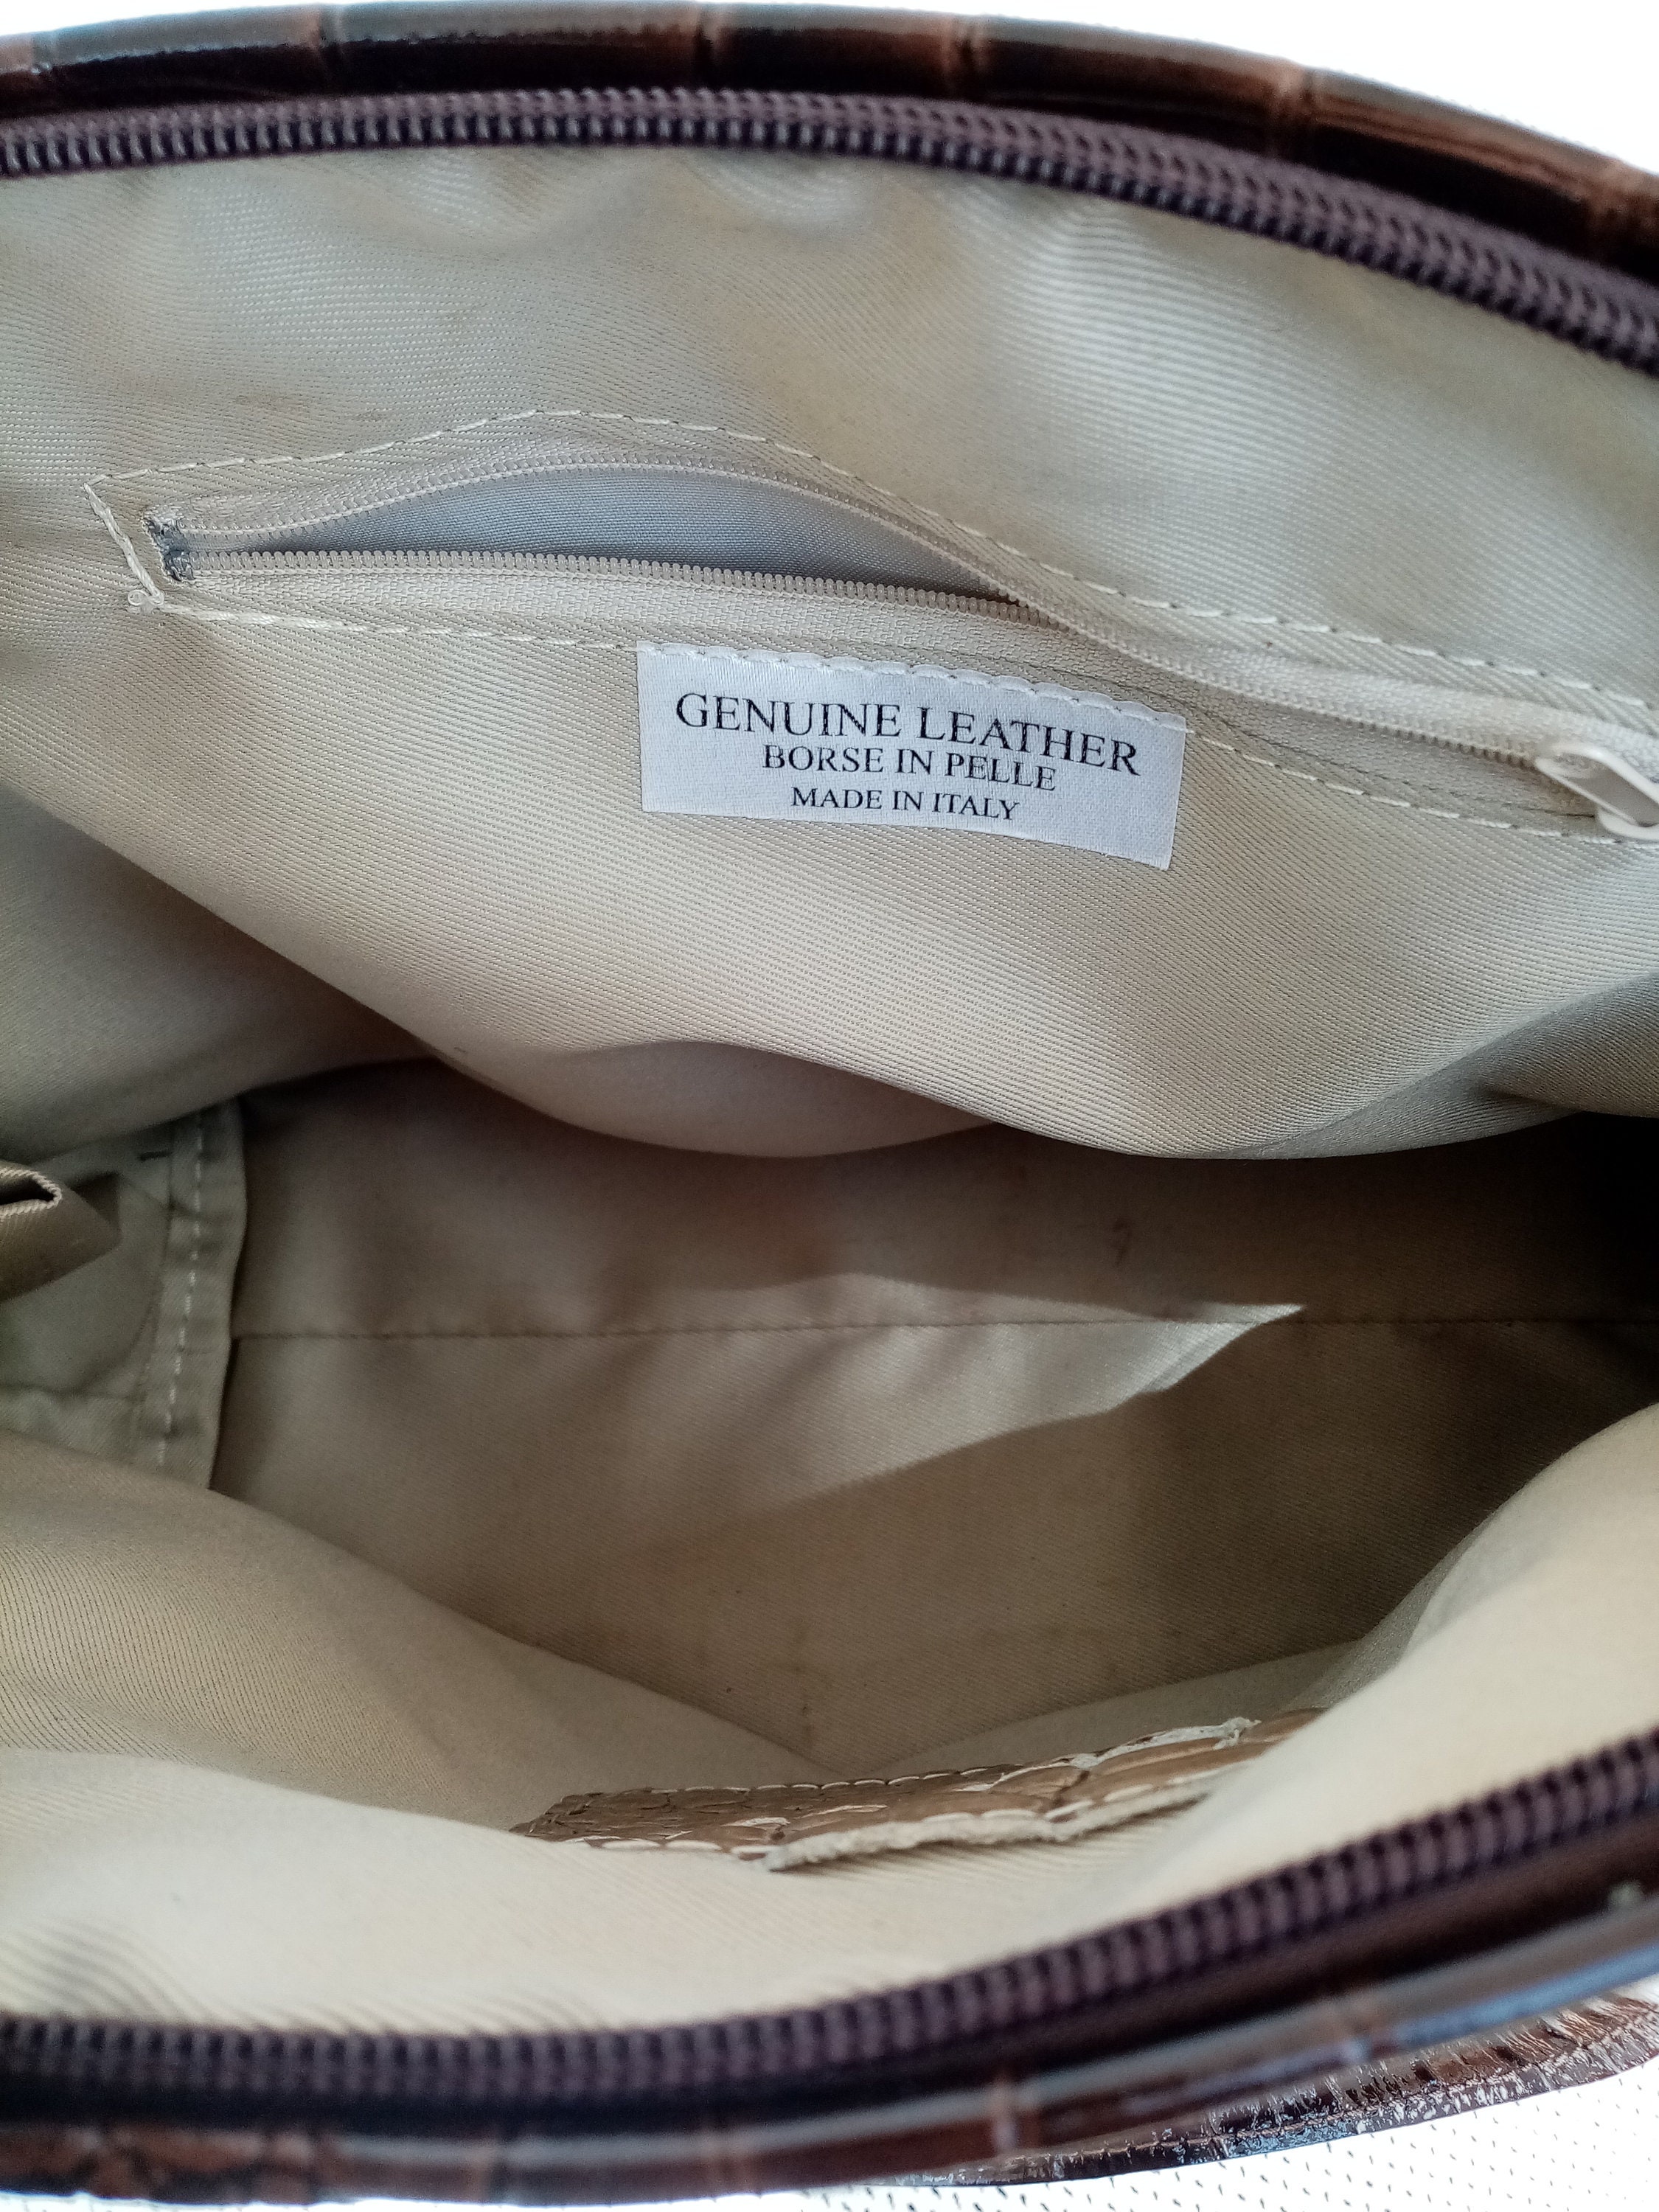 Borse in Pelle Bag Genuine Handbag Croc Embossed